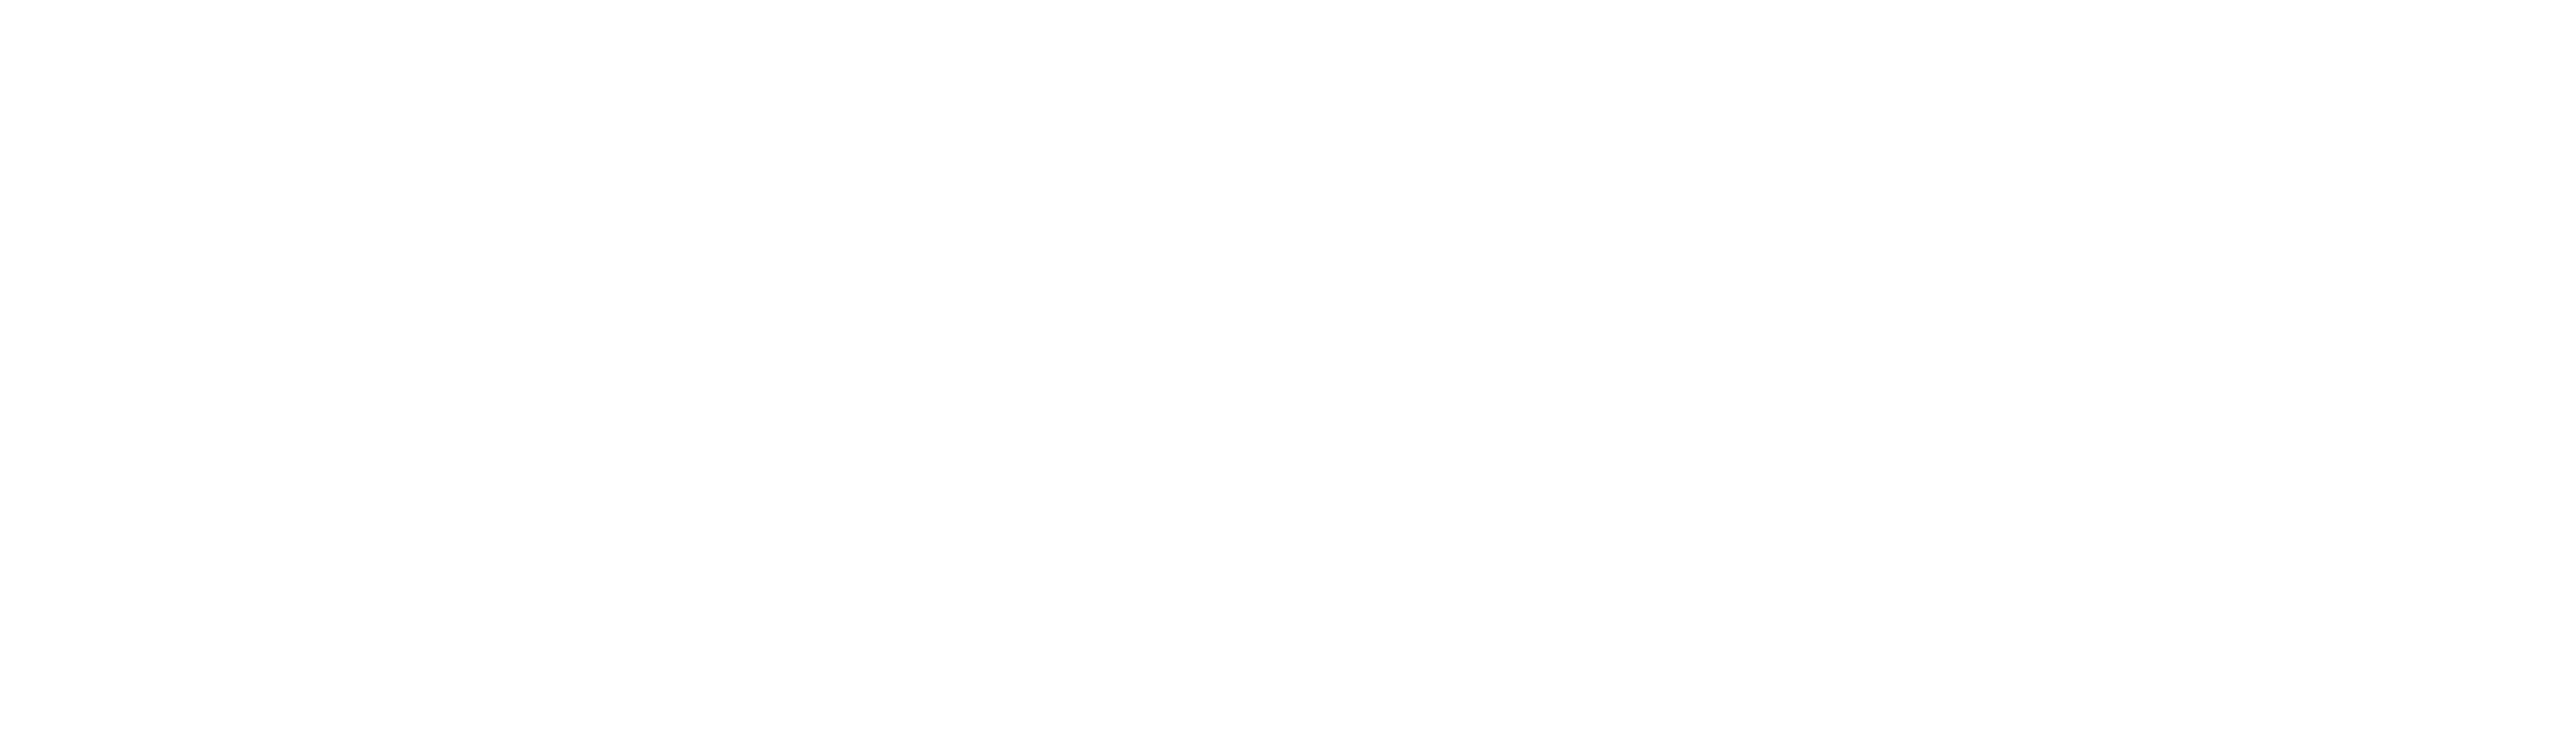 Onespacegg.com